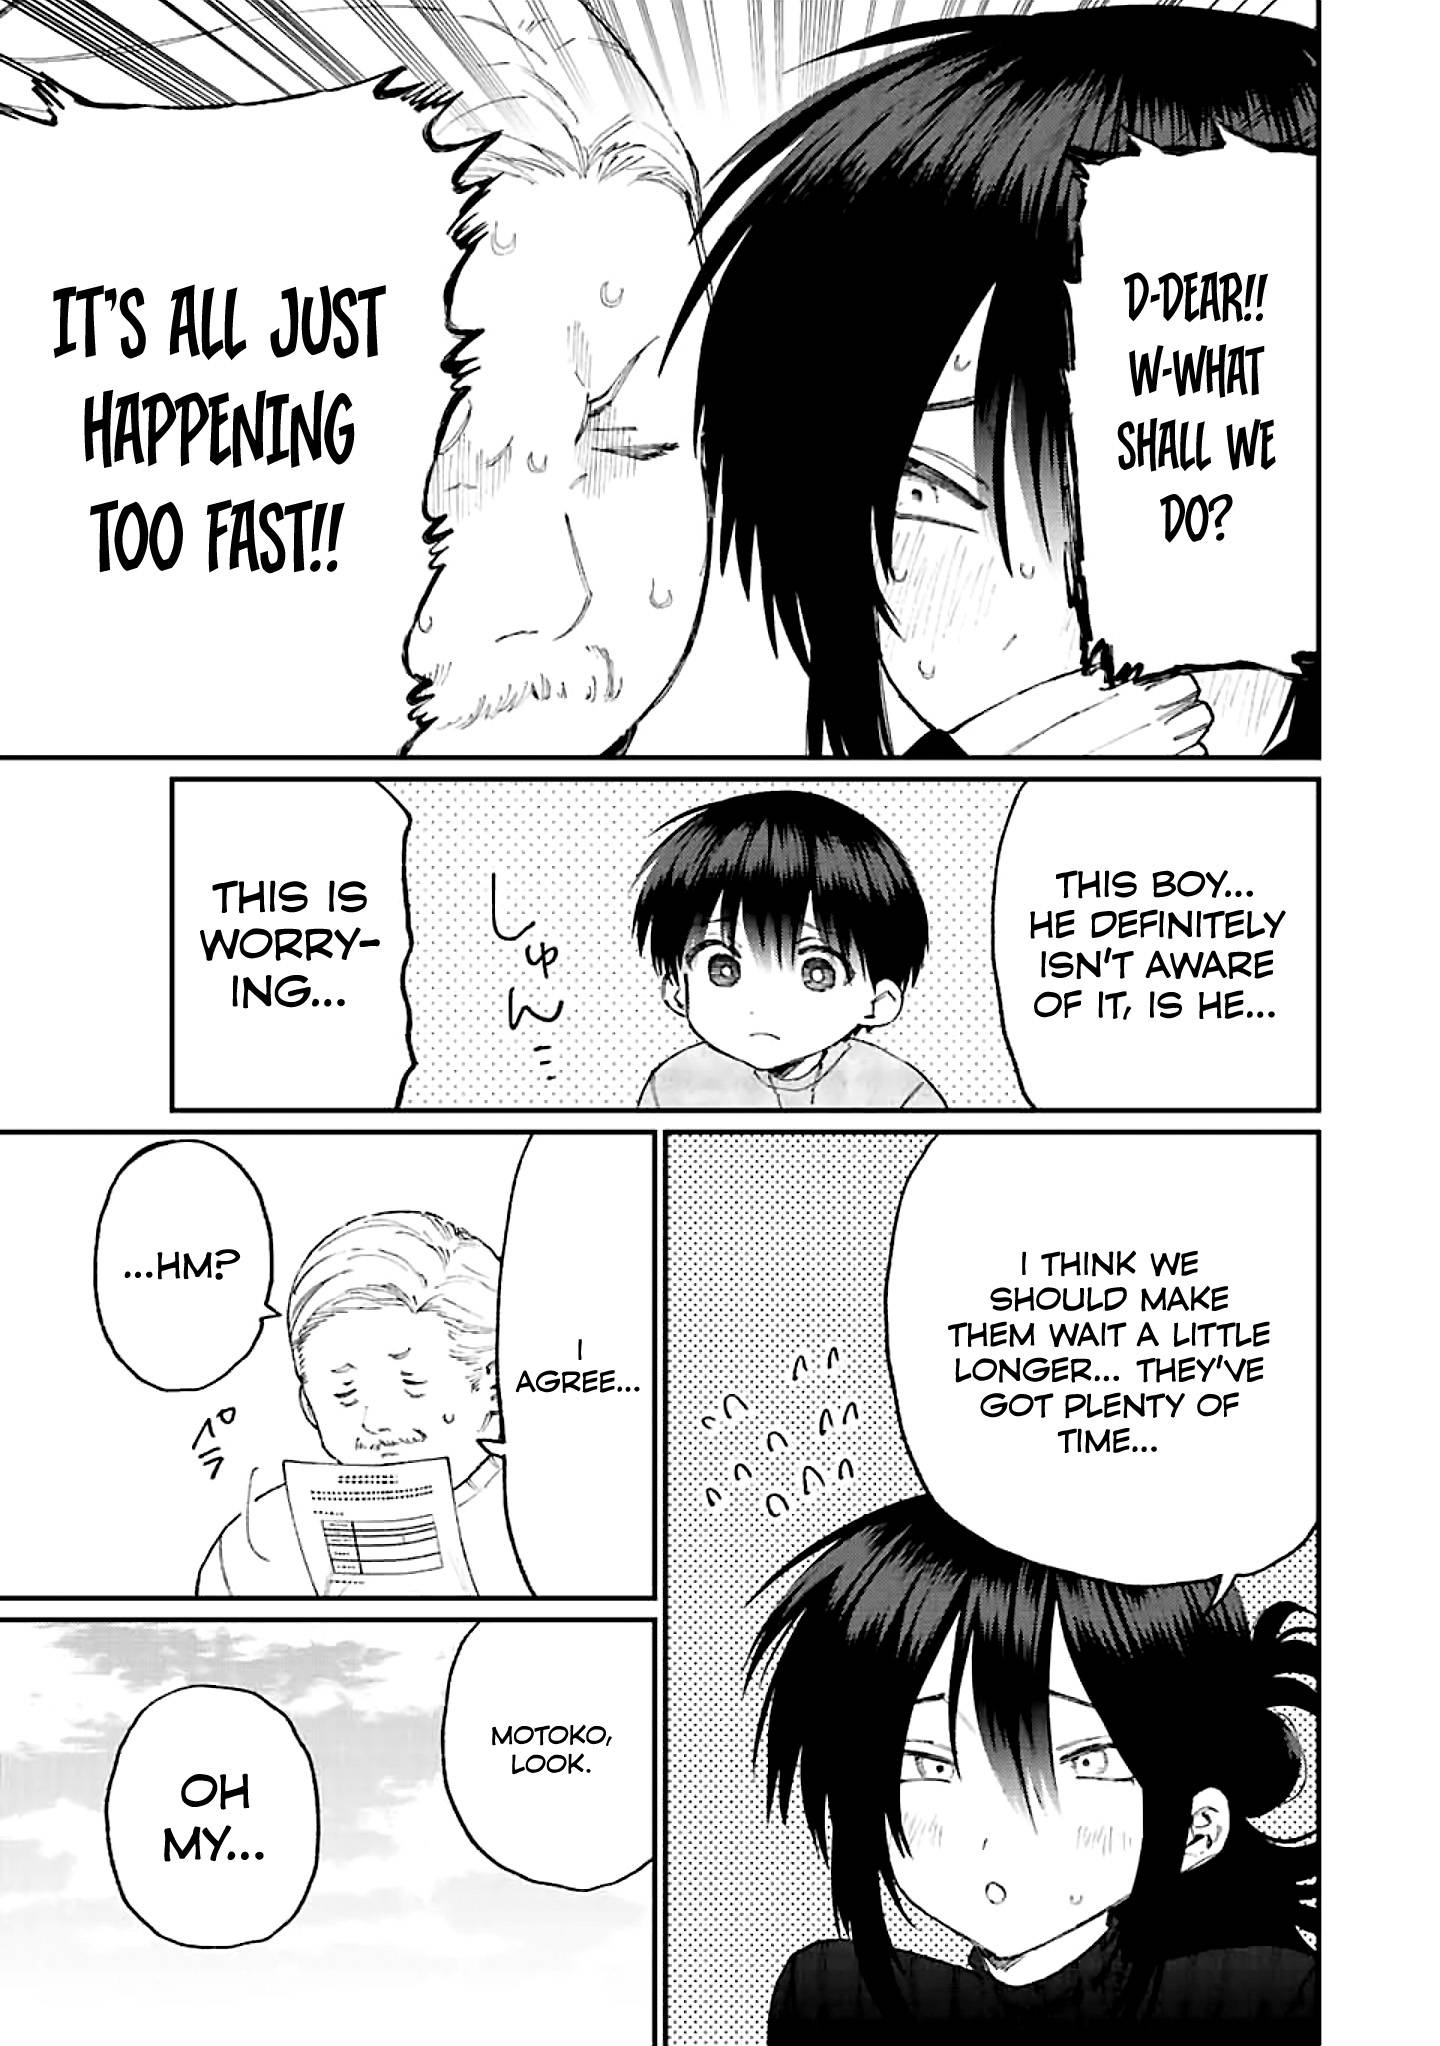 Shikimori's Not Just A Cutie - chapter 172 - #3